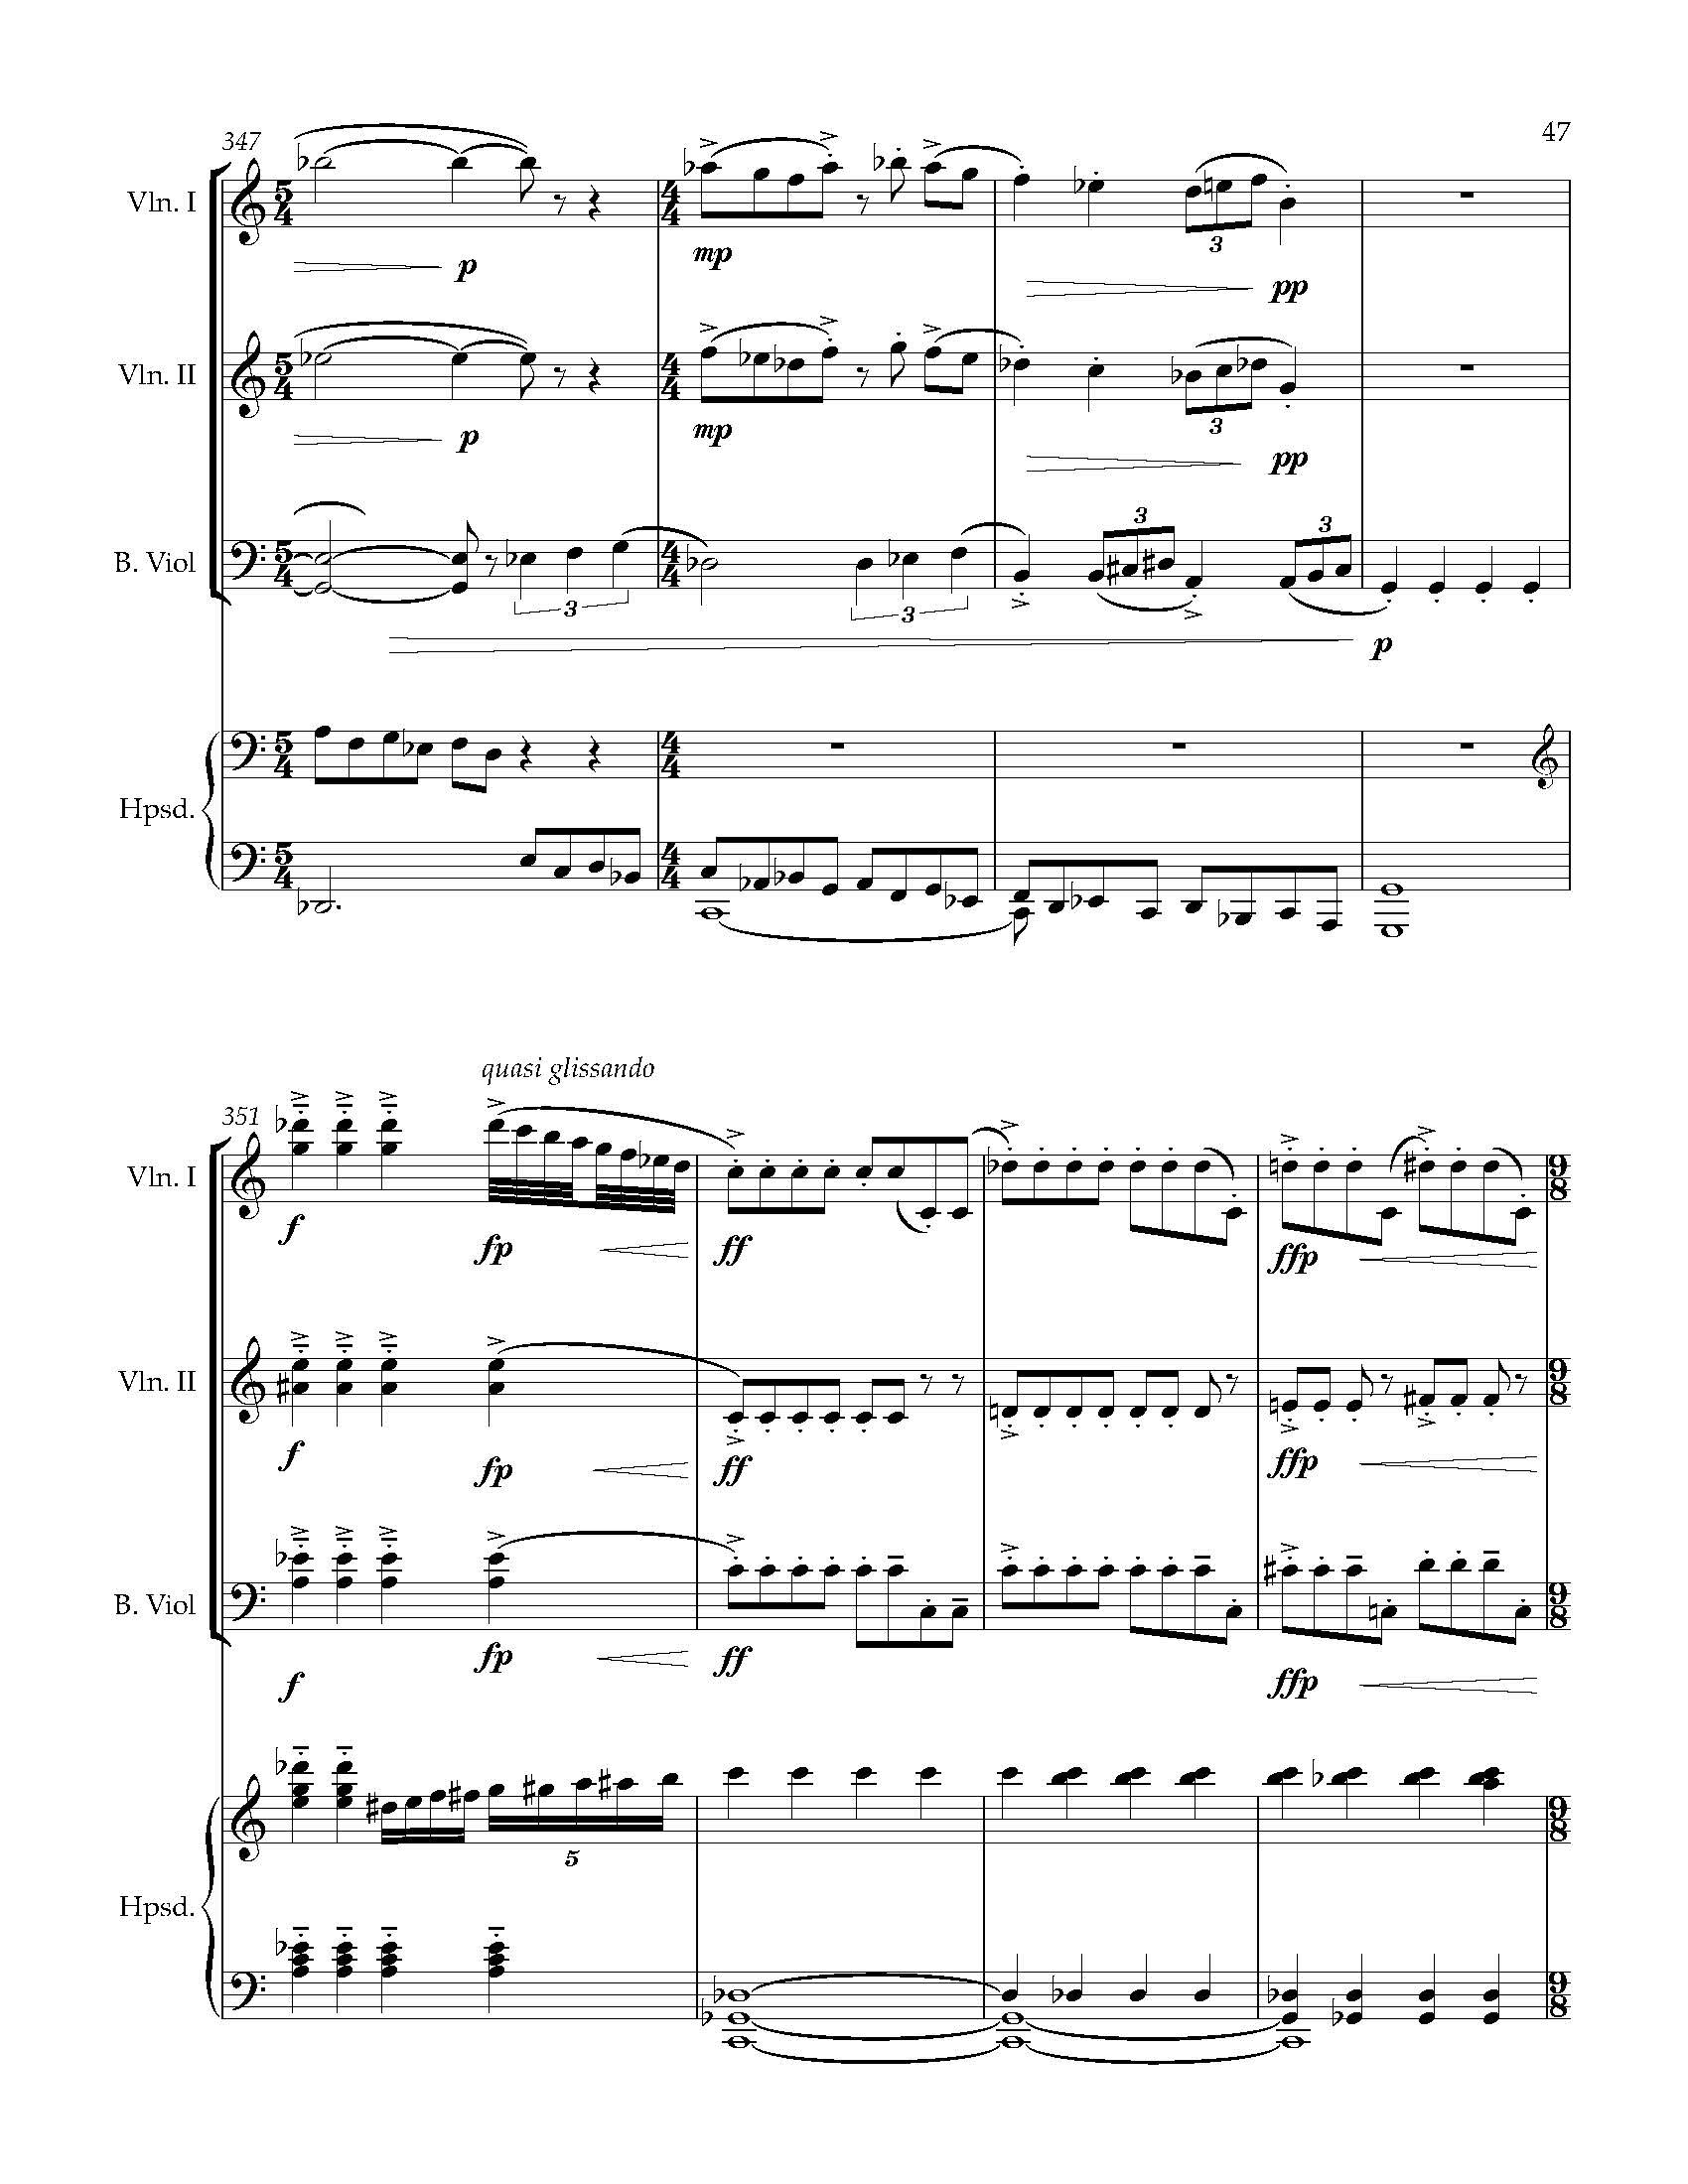 Sonata Sonare - Complete Score_Page_53.jpg